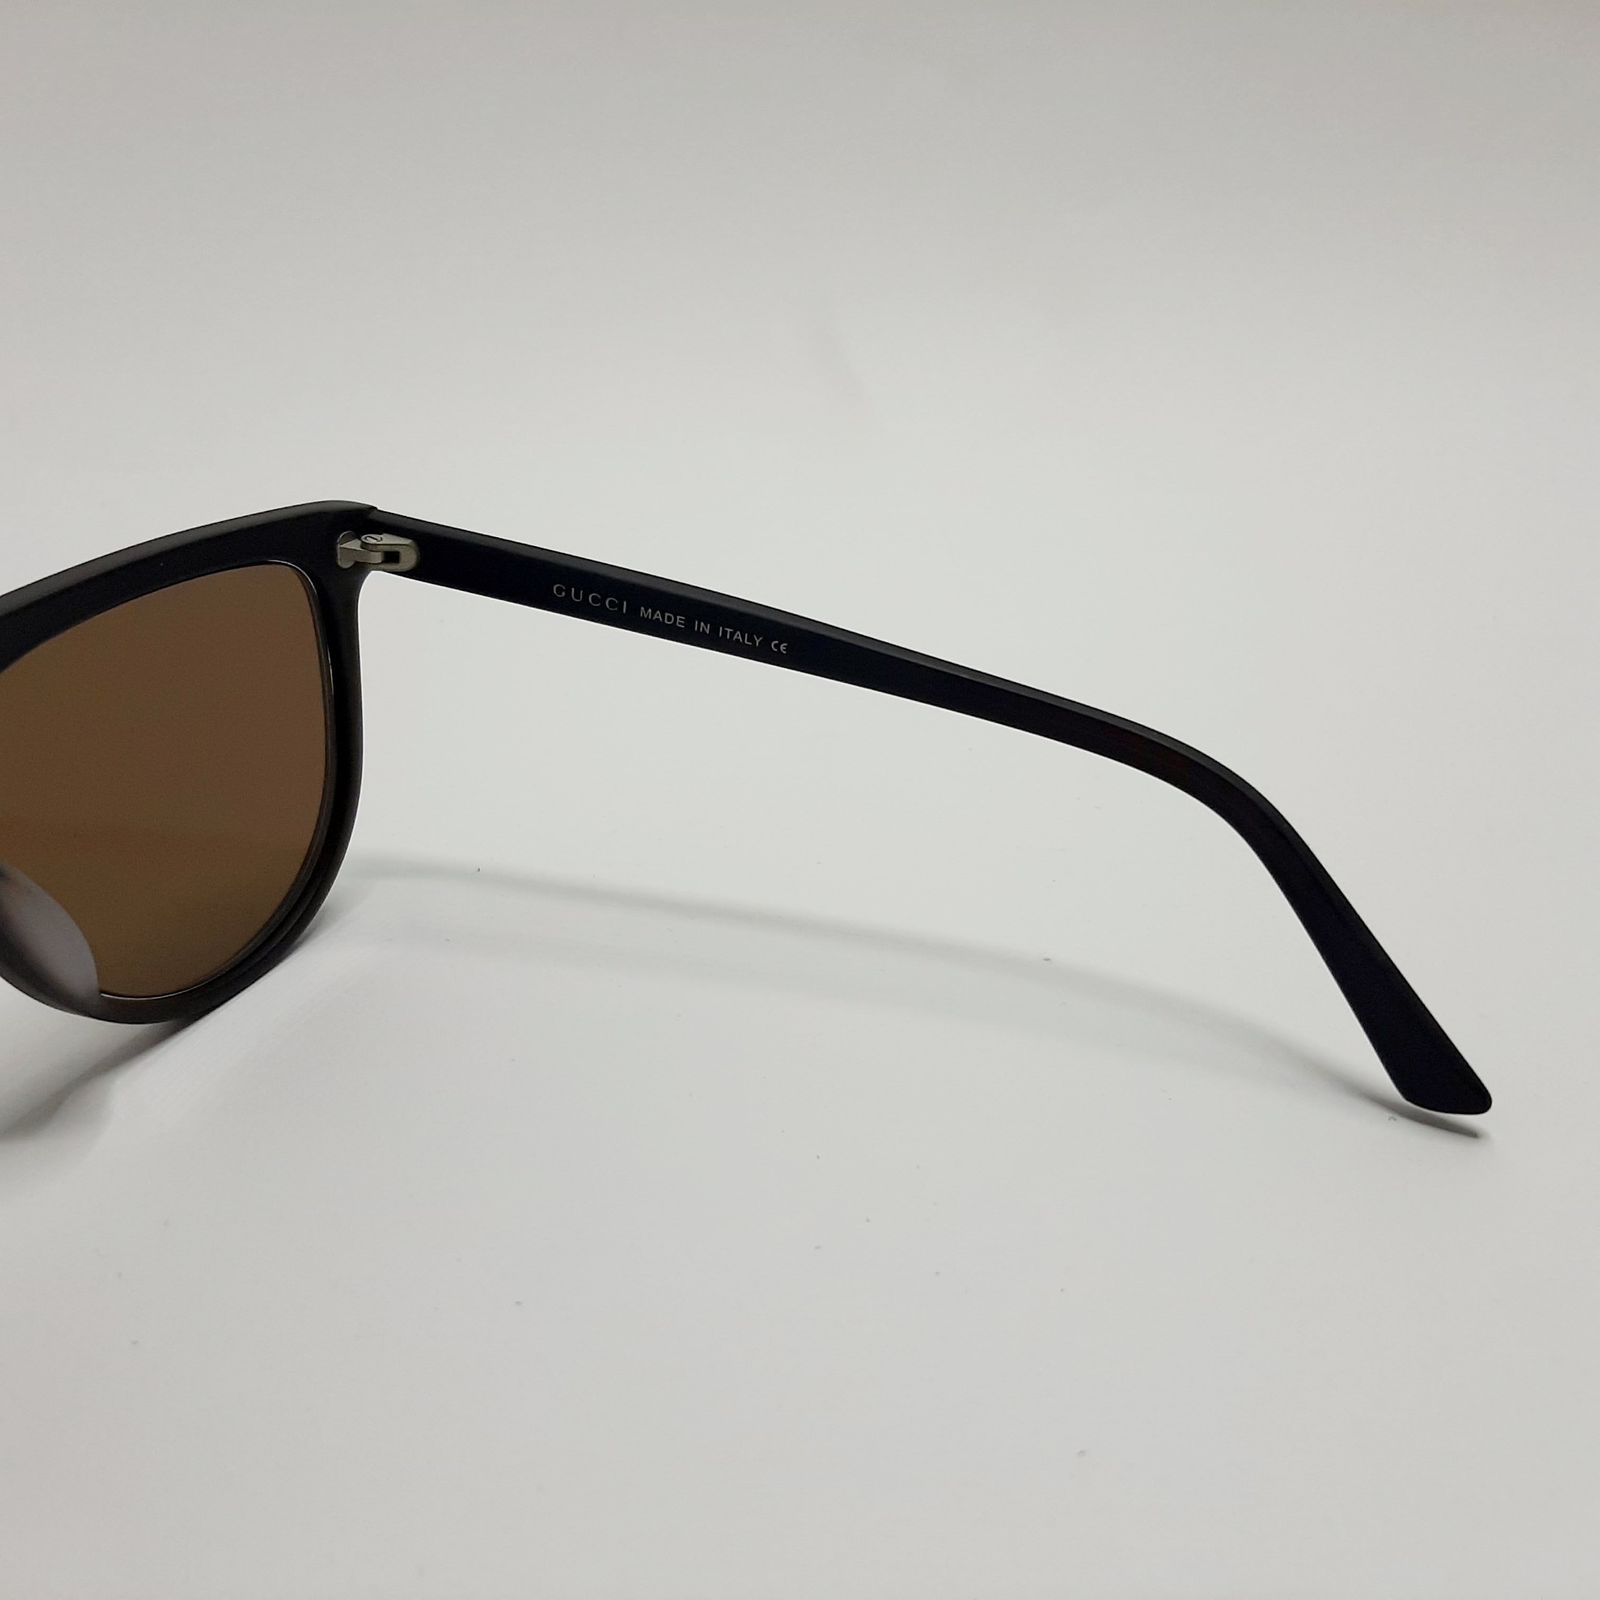 عینک آفتابی گوچی مدل GG1070c5 -  - 7